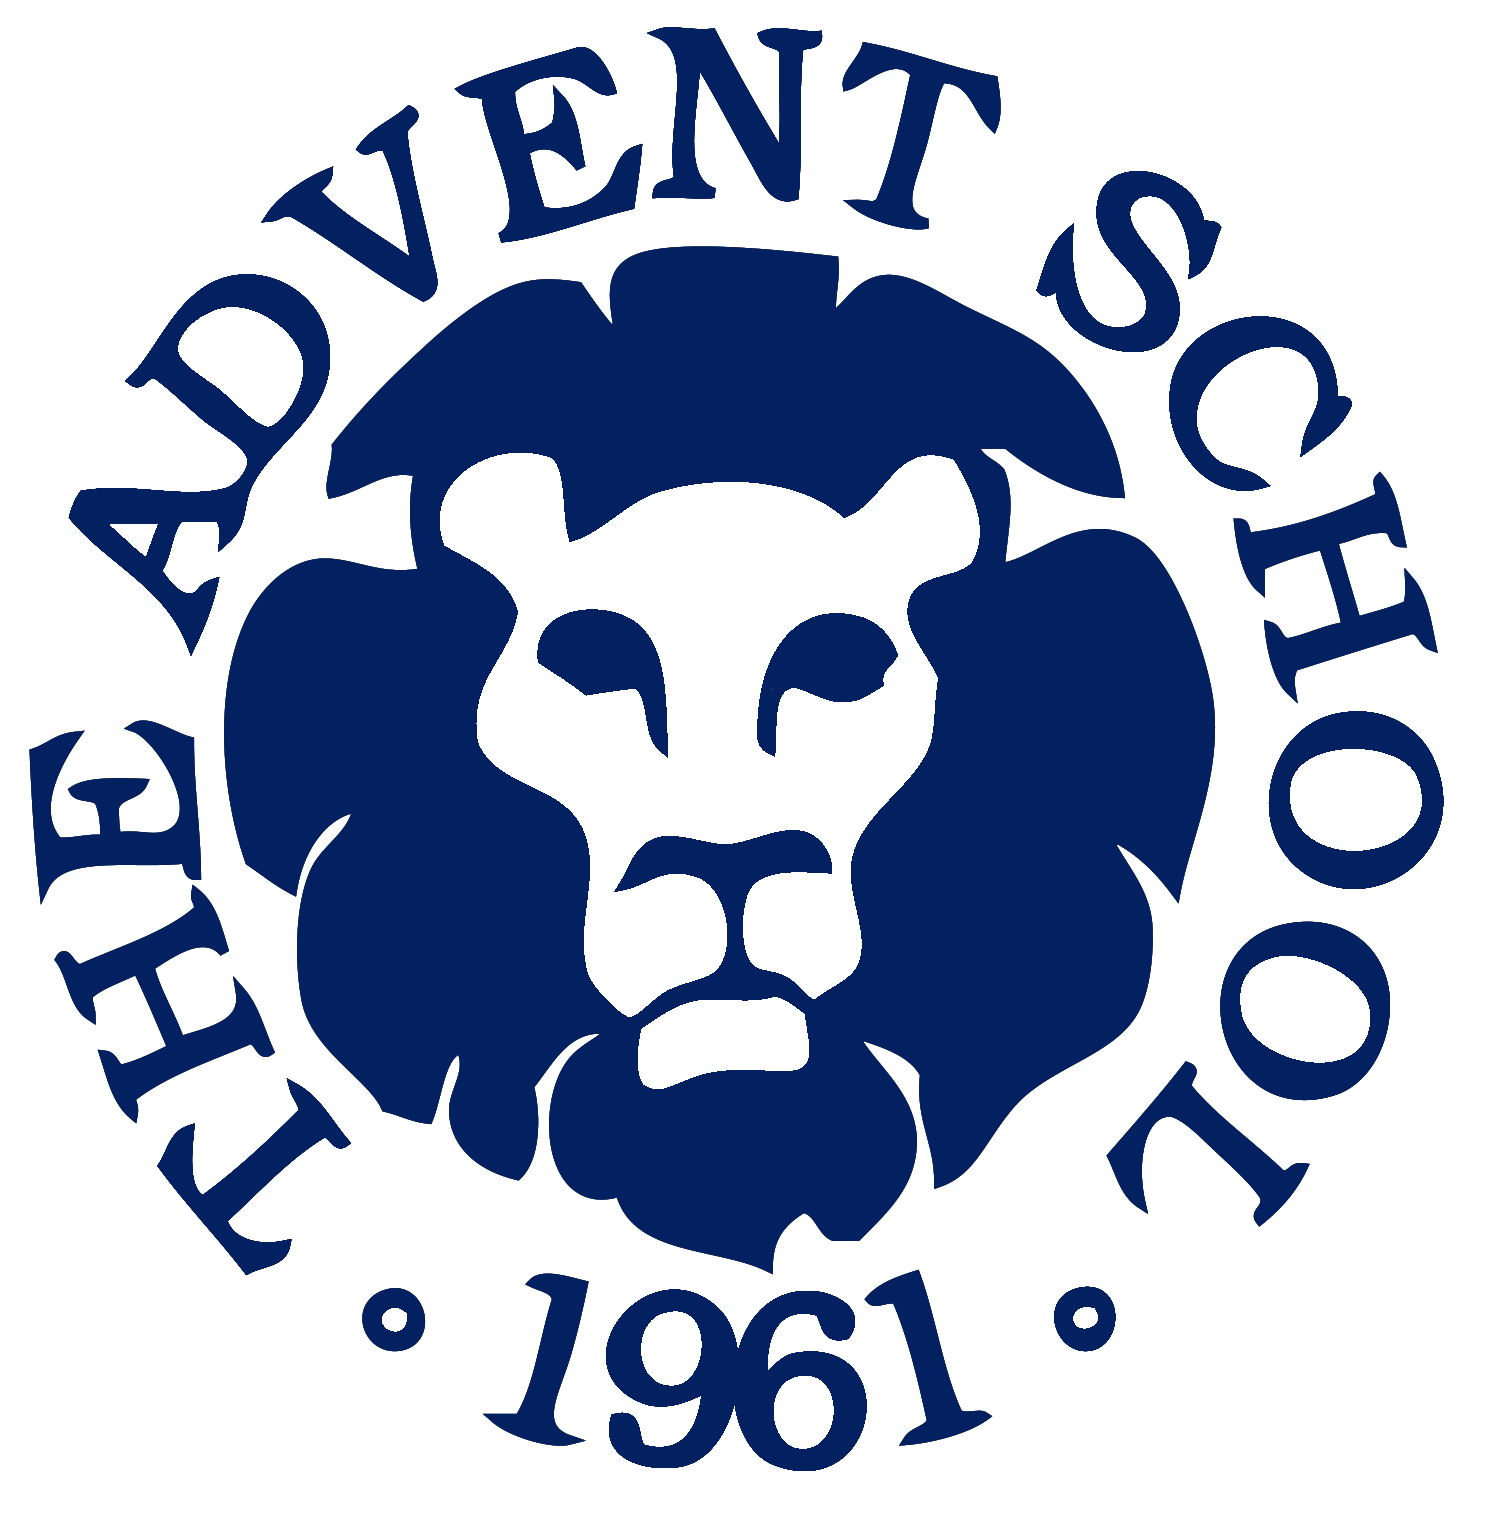 The Advent School